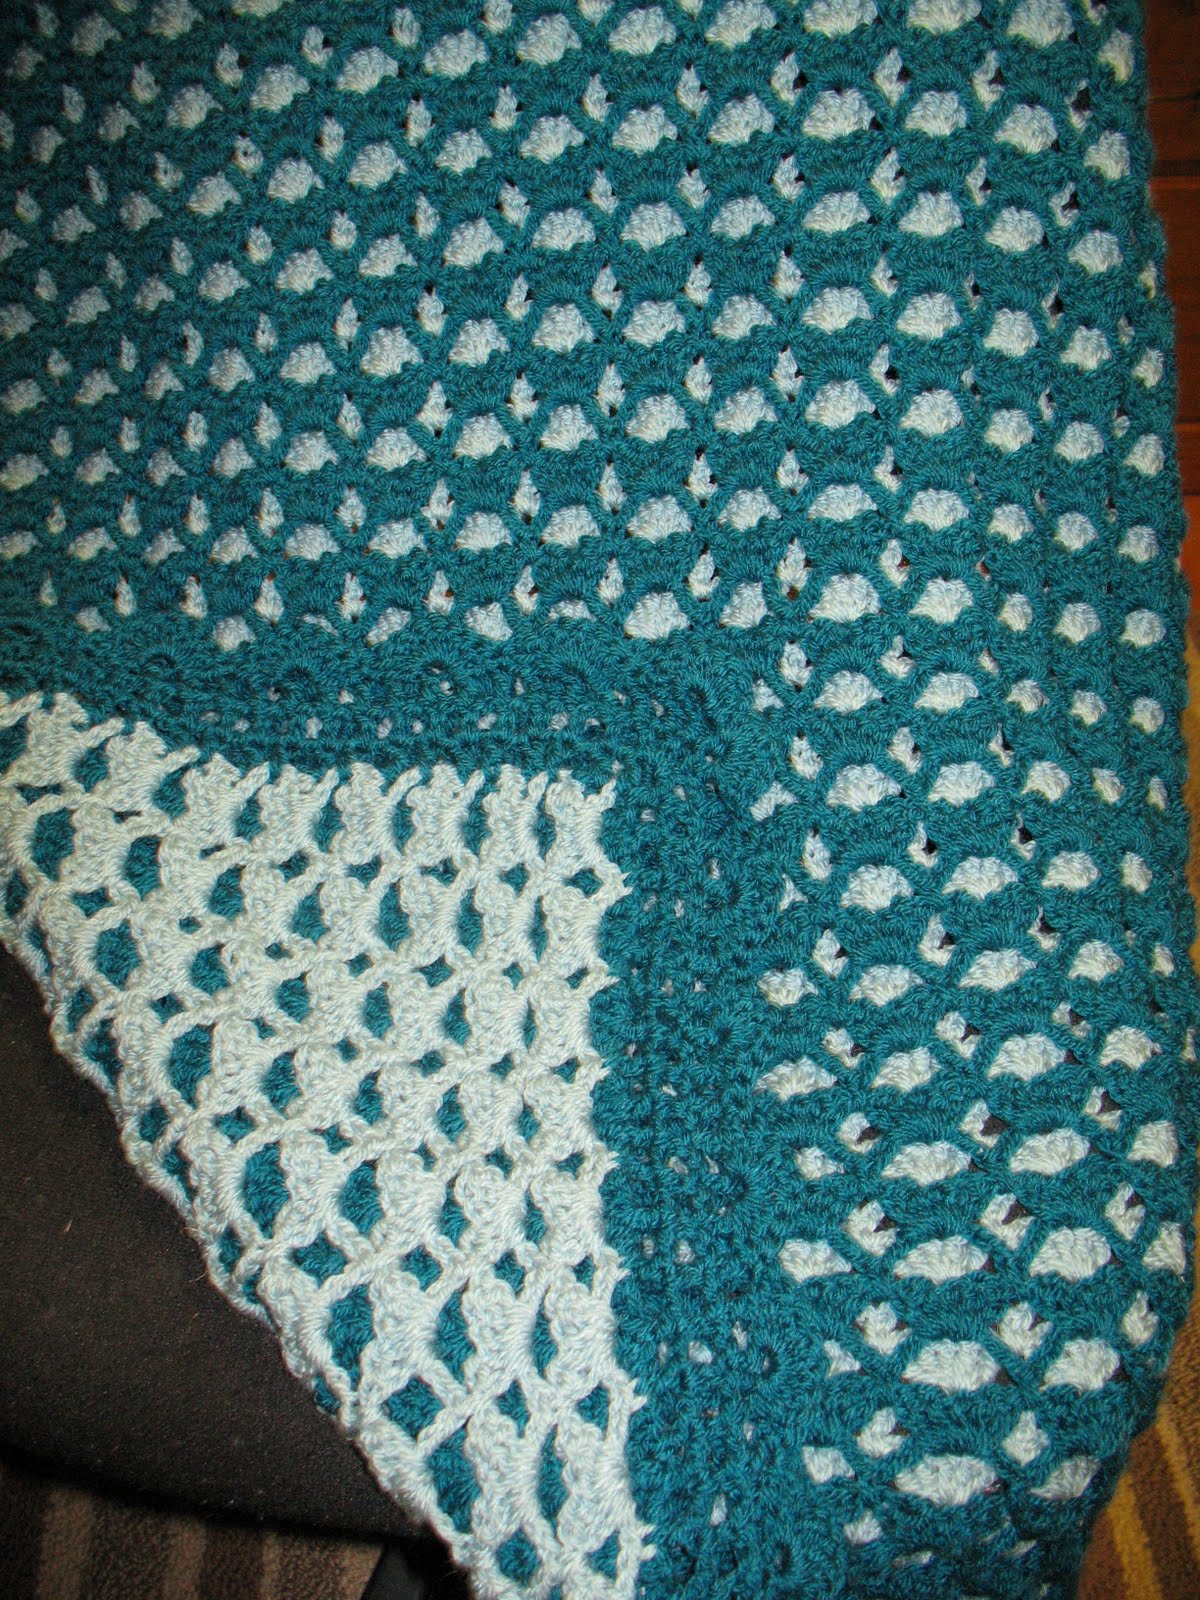 Double sided crochet